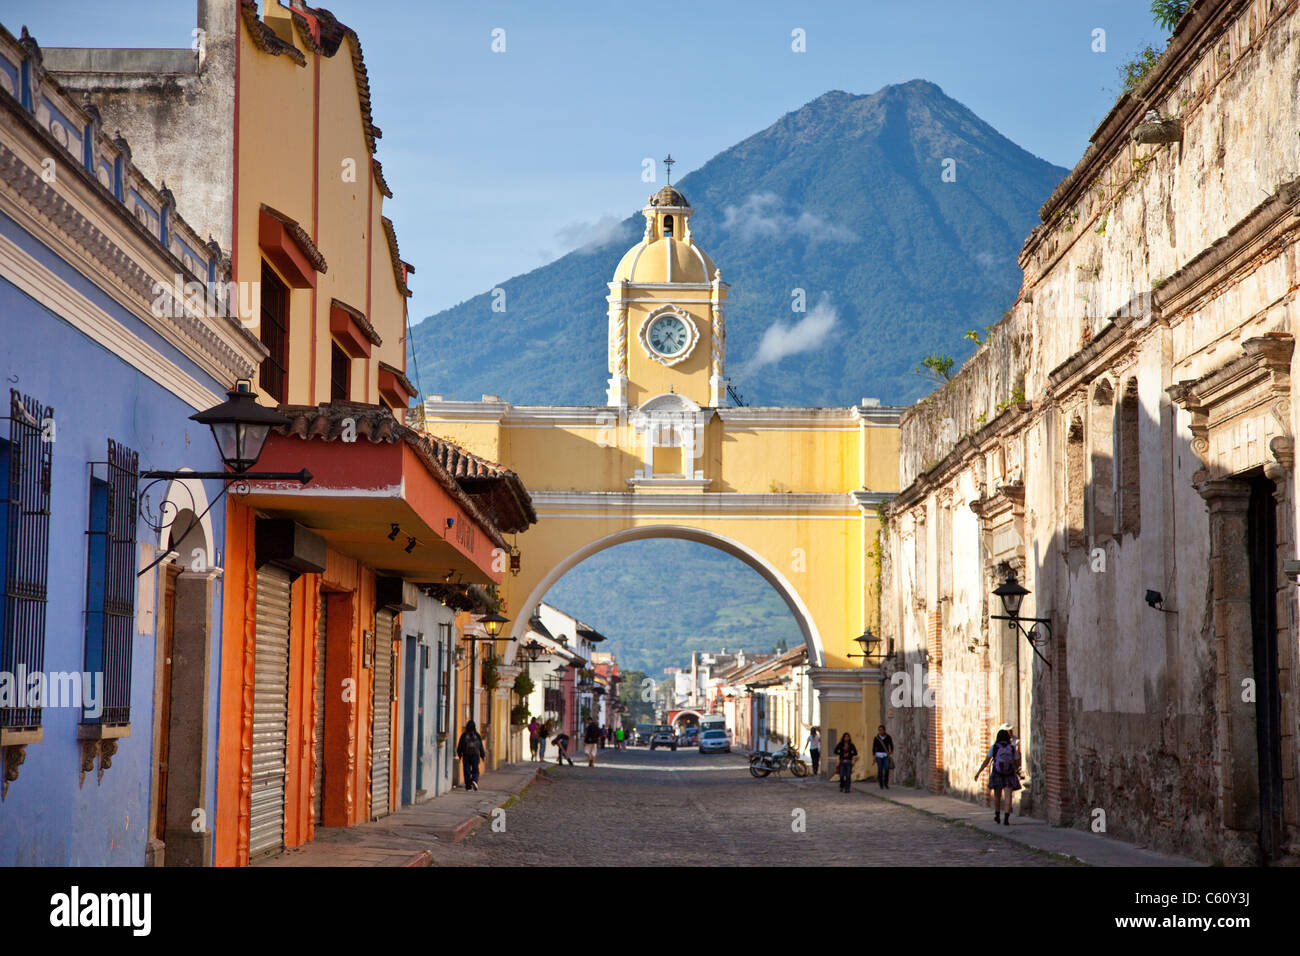 Volcan Agua, Santa Catalina Arch, Calle del Arco, Antigua, Guatemala Foto Stock